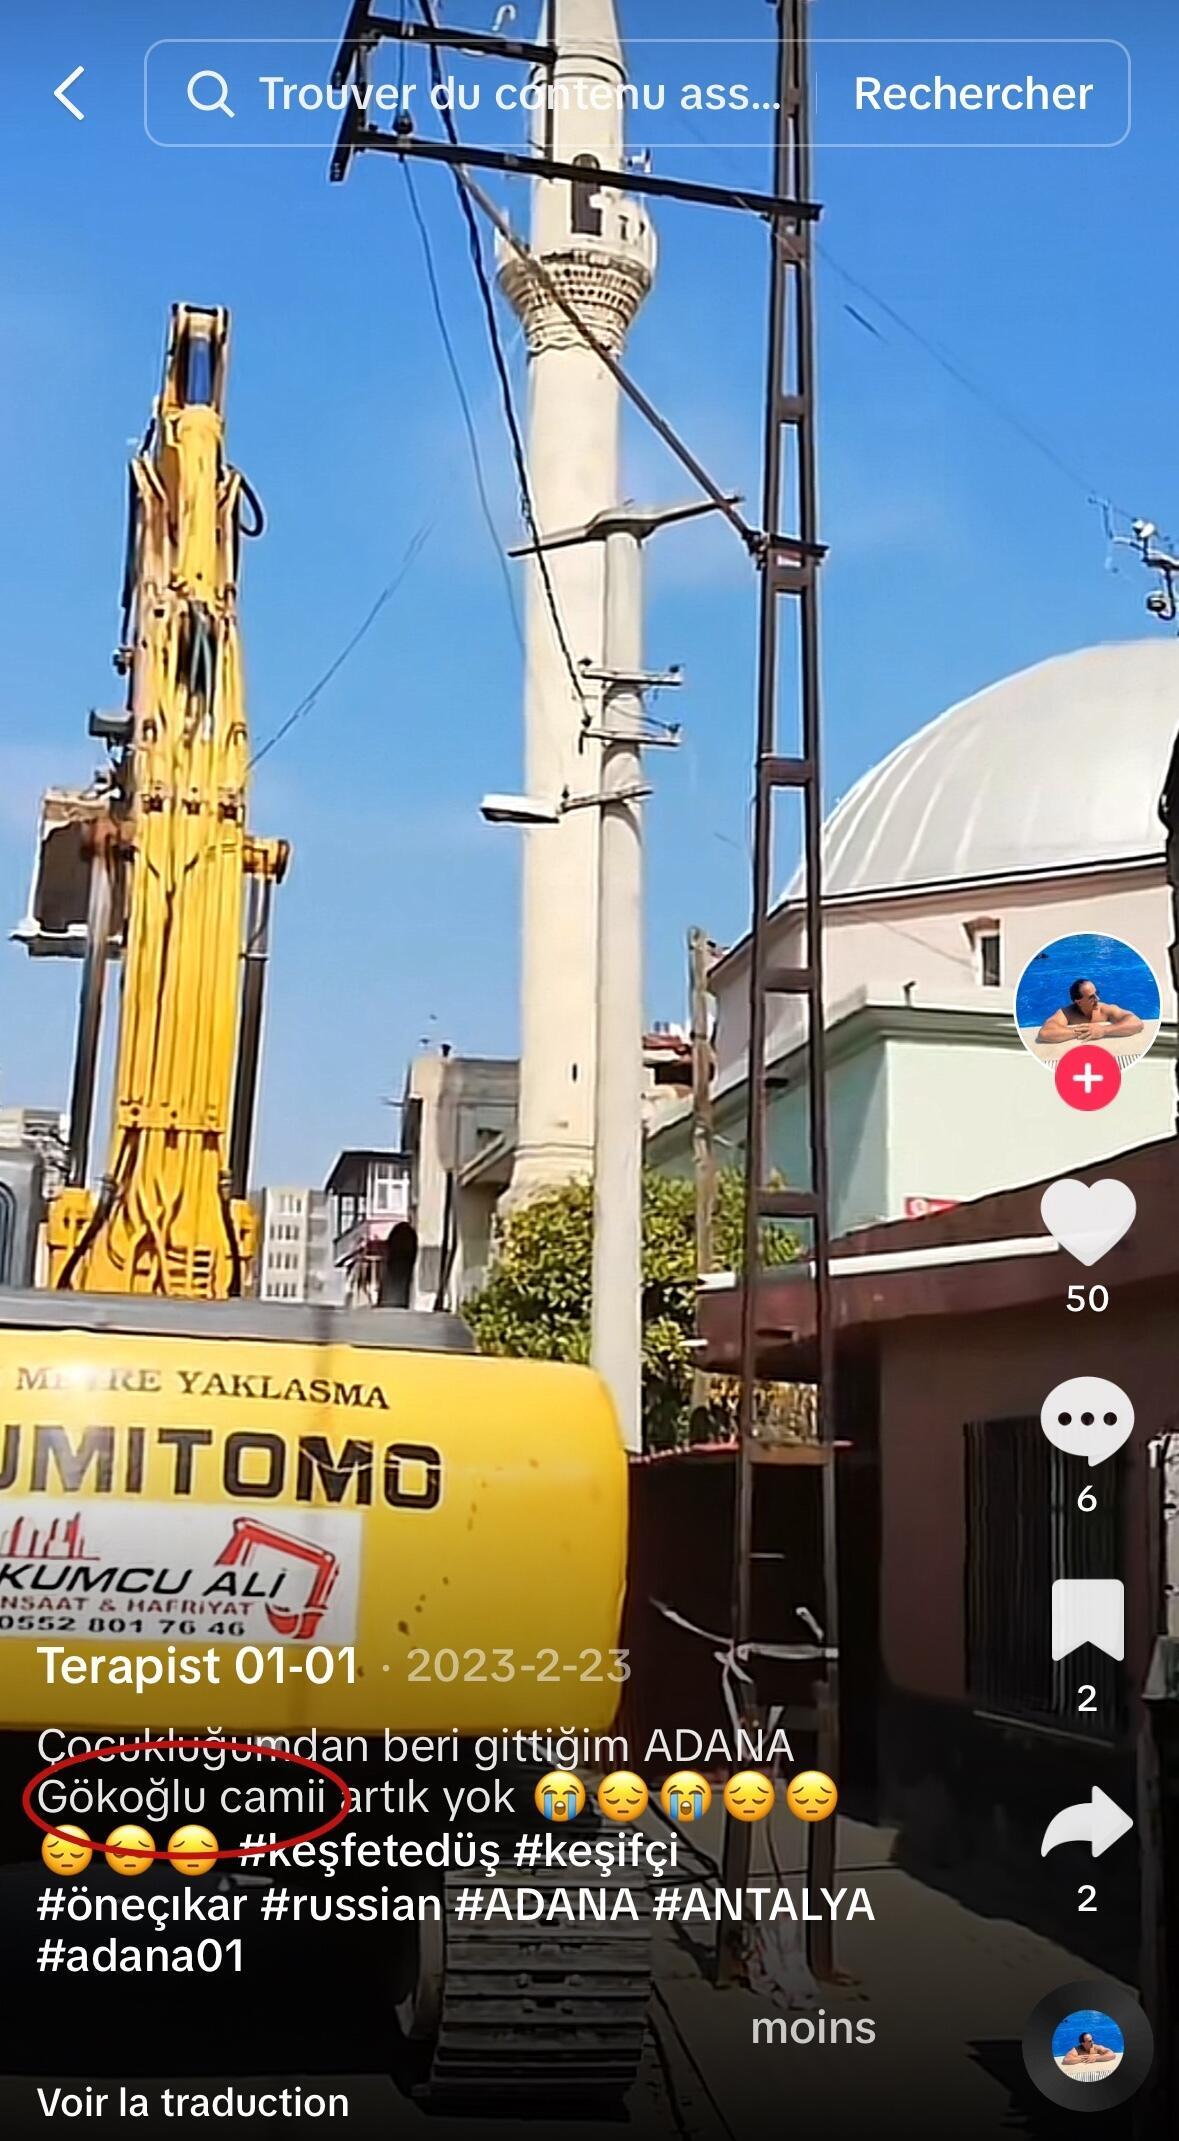 Dies ist ein Screenshot eines TikTok-Videos, das besagt, dass dieses Filmmaterial die Gökoğlu-Moschee in Adana zeigt.